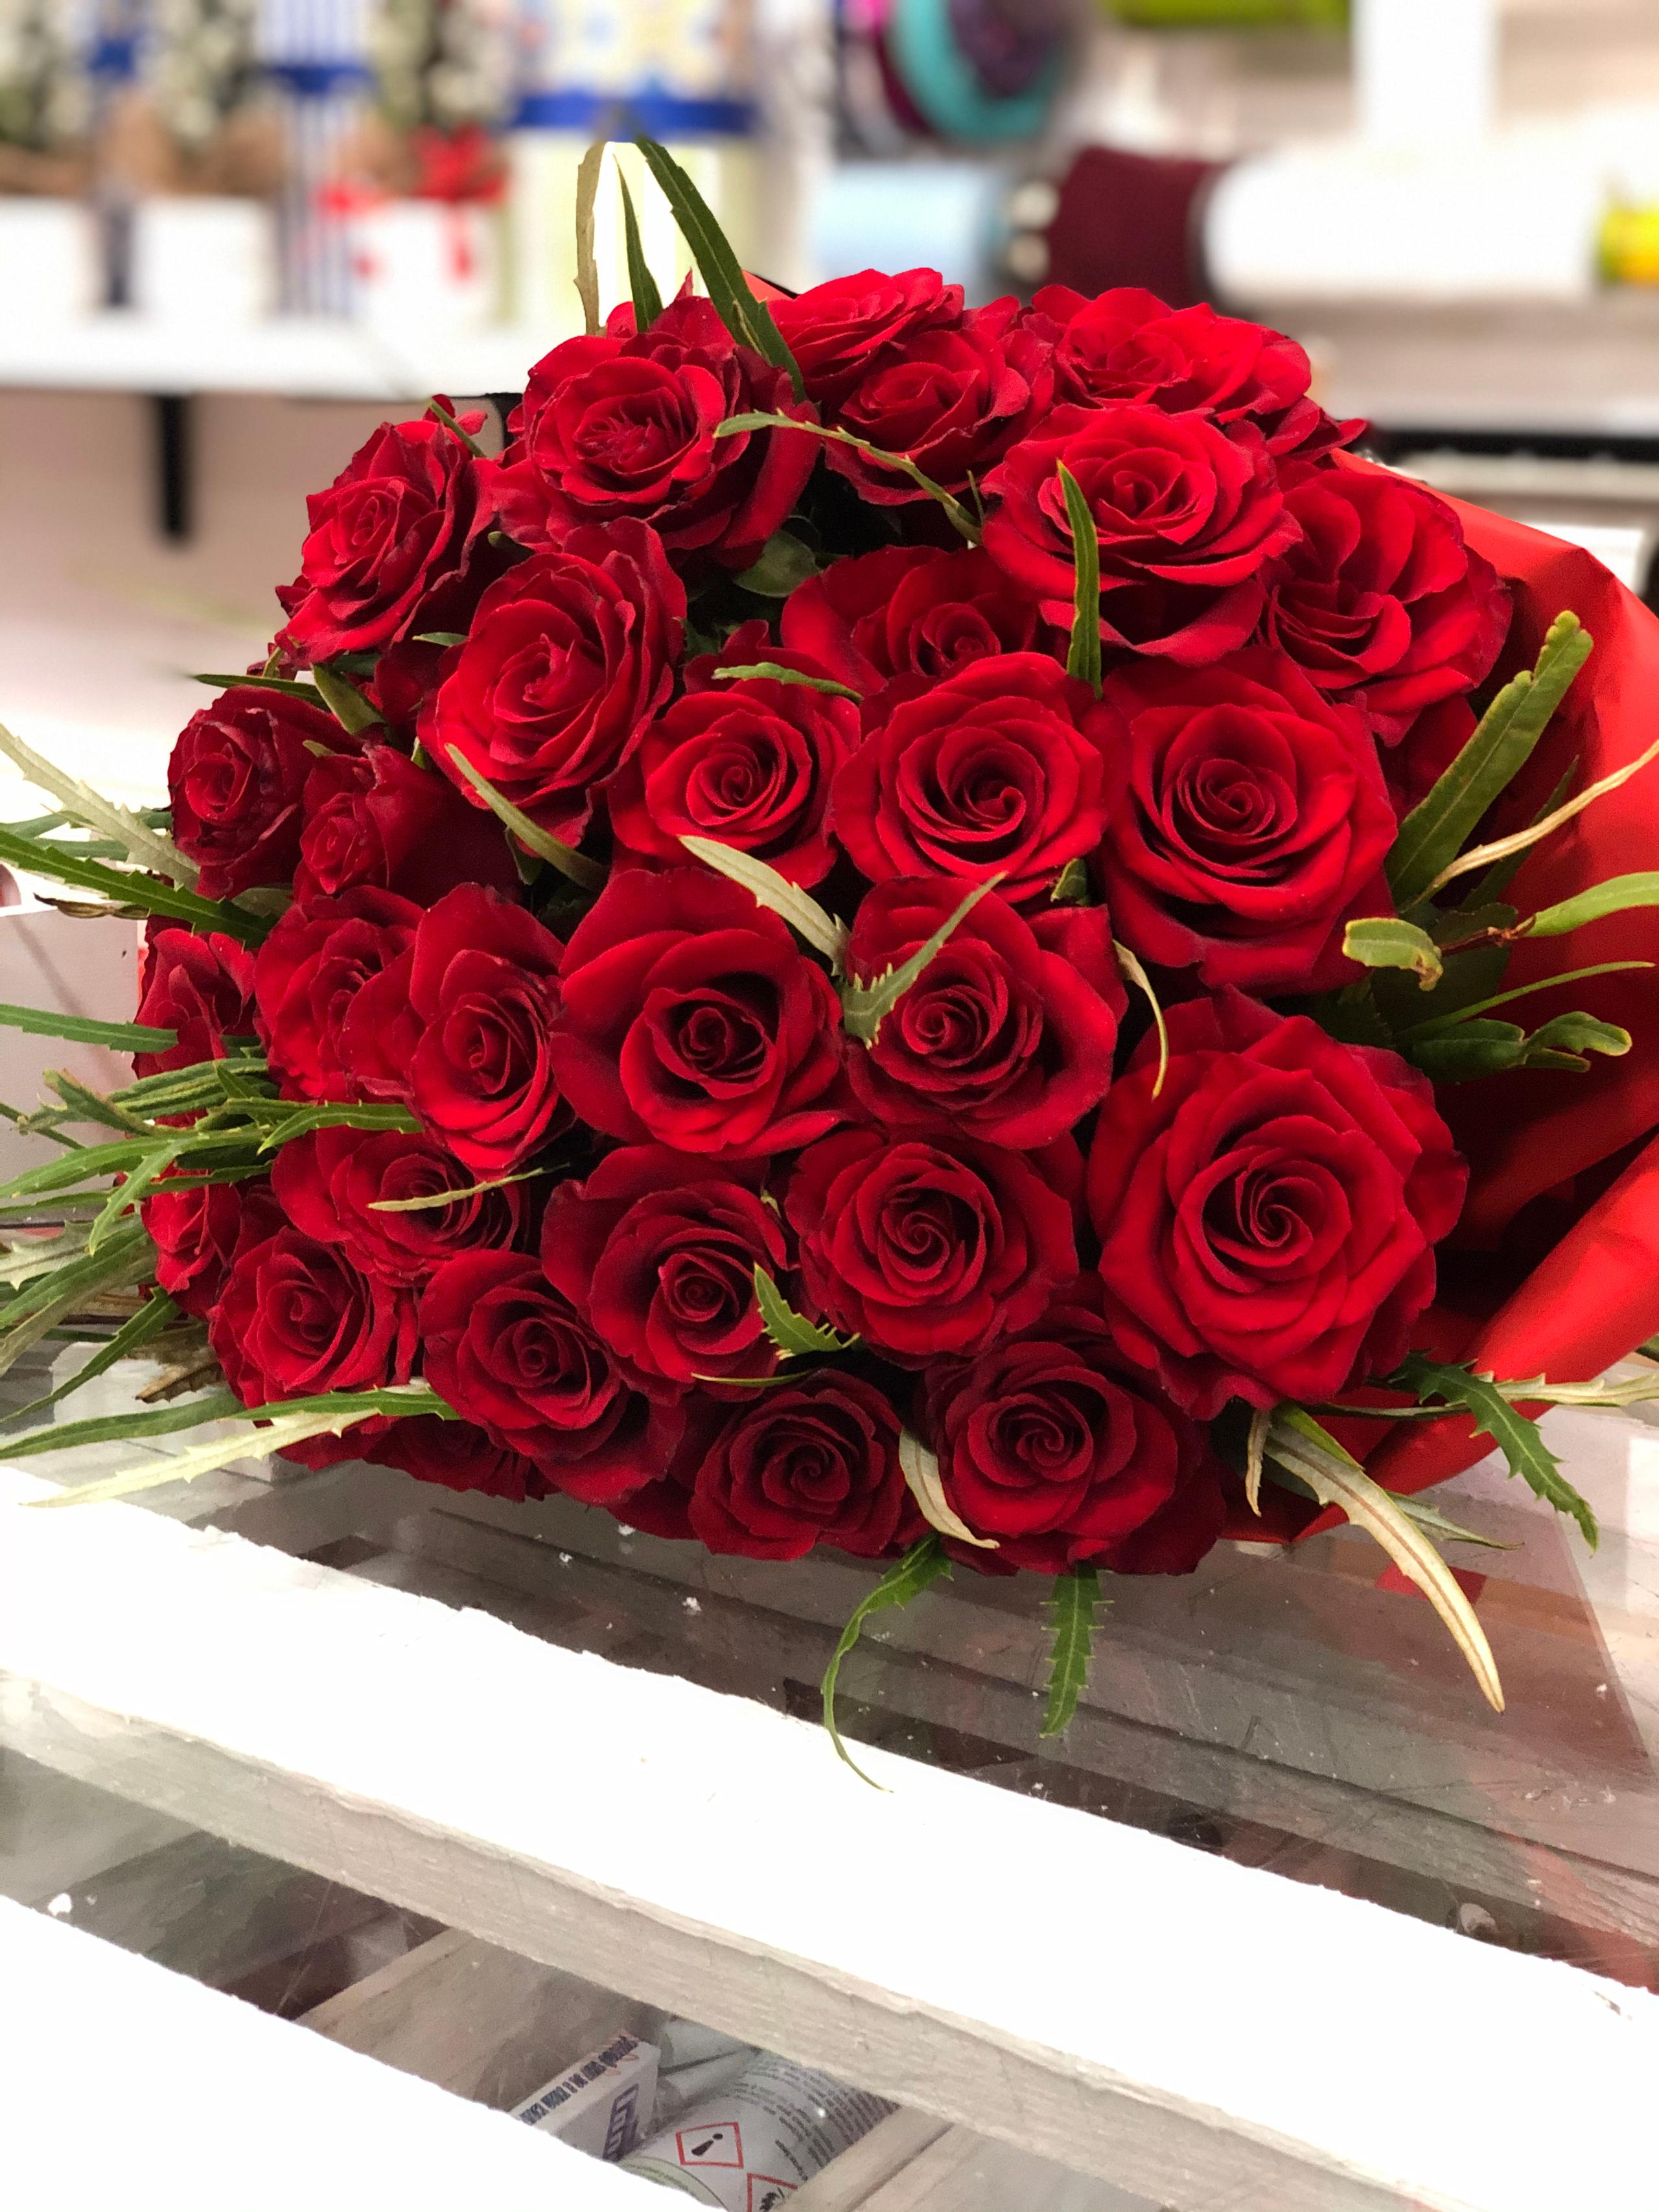 Bouquet di rose rosse